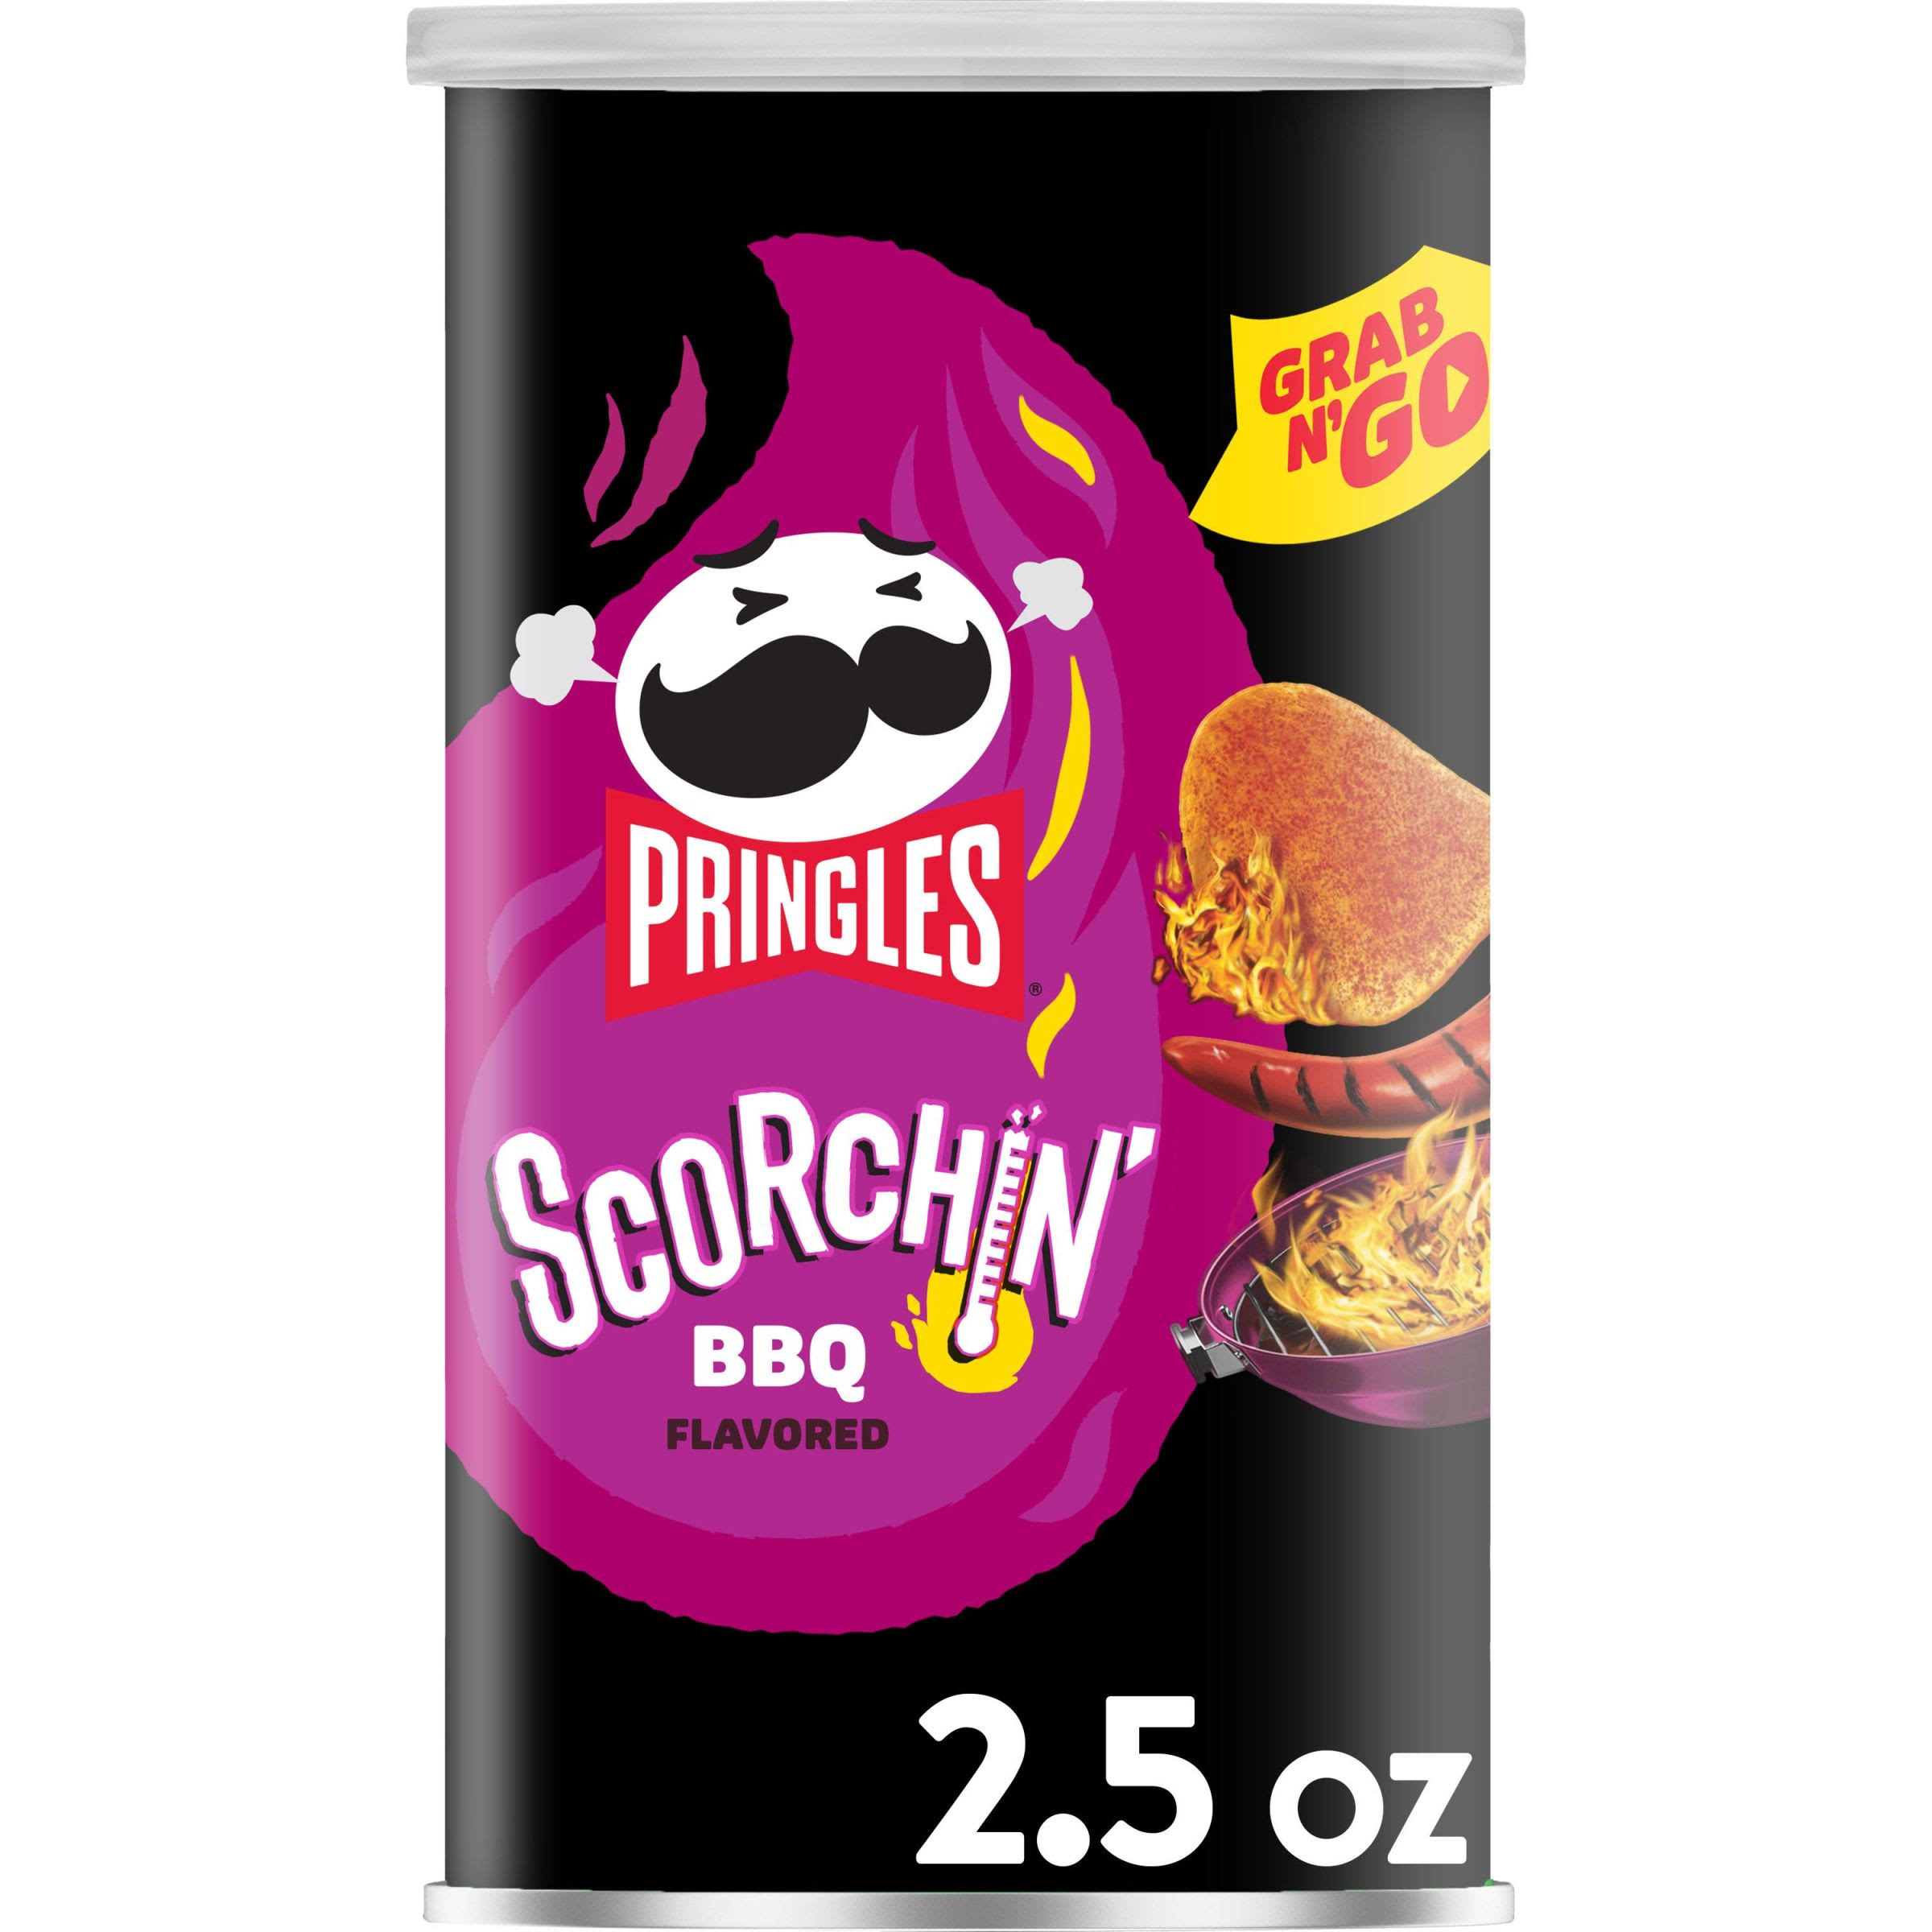 Pringles Scorchin' Potato Crisps, BBQ Flavored, Grab N' Go - 2.5 oz